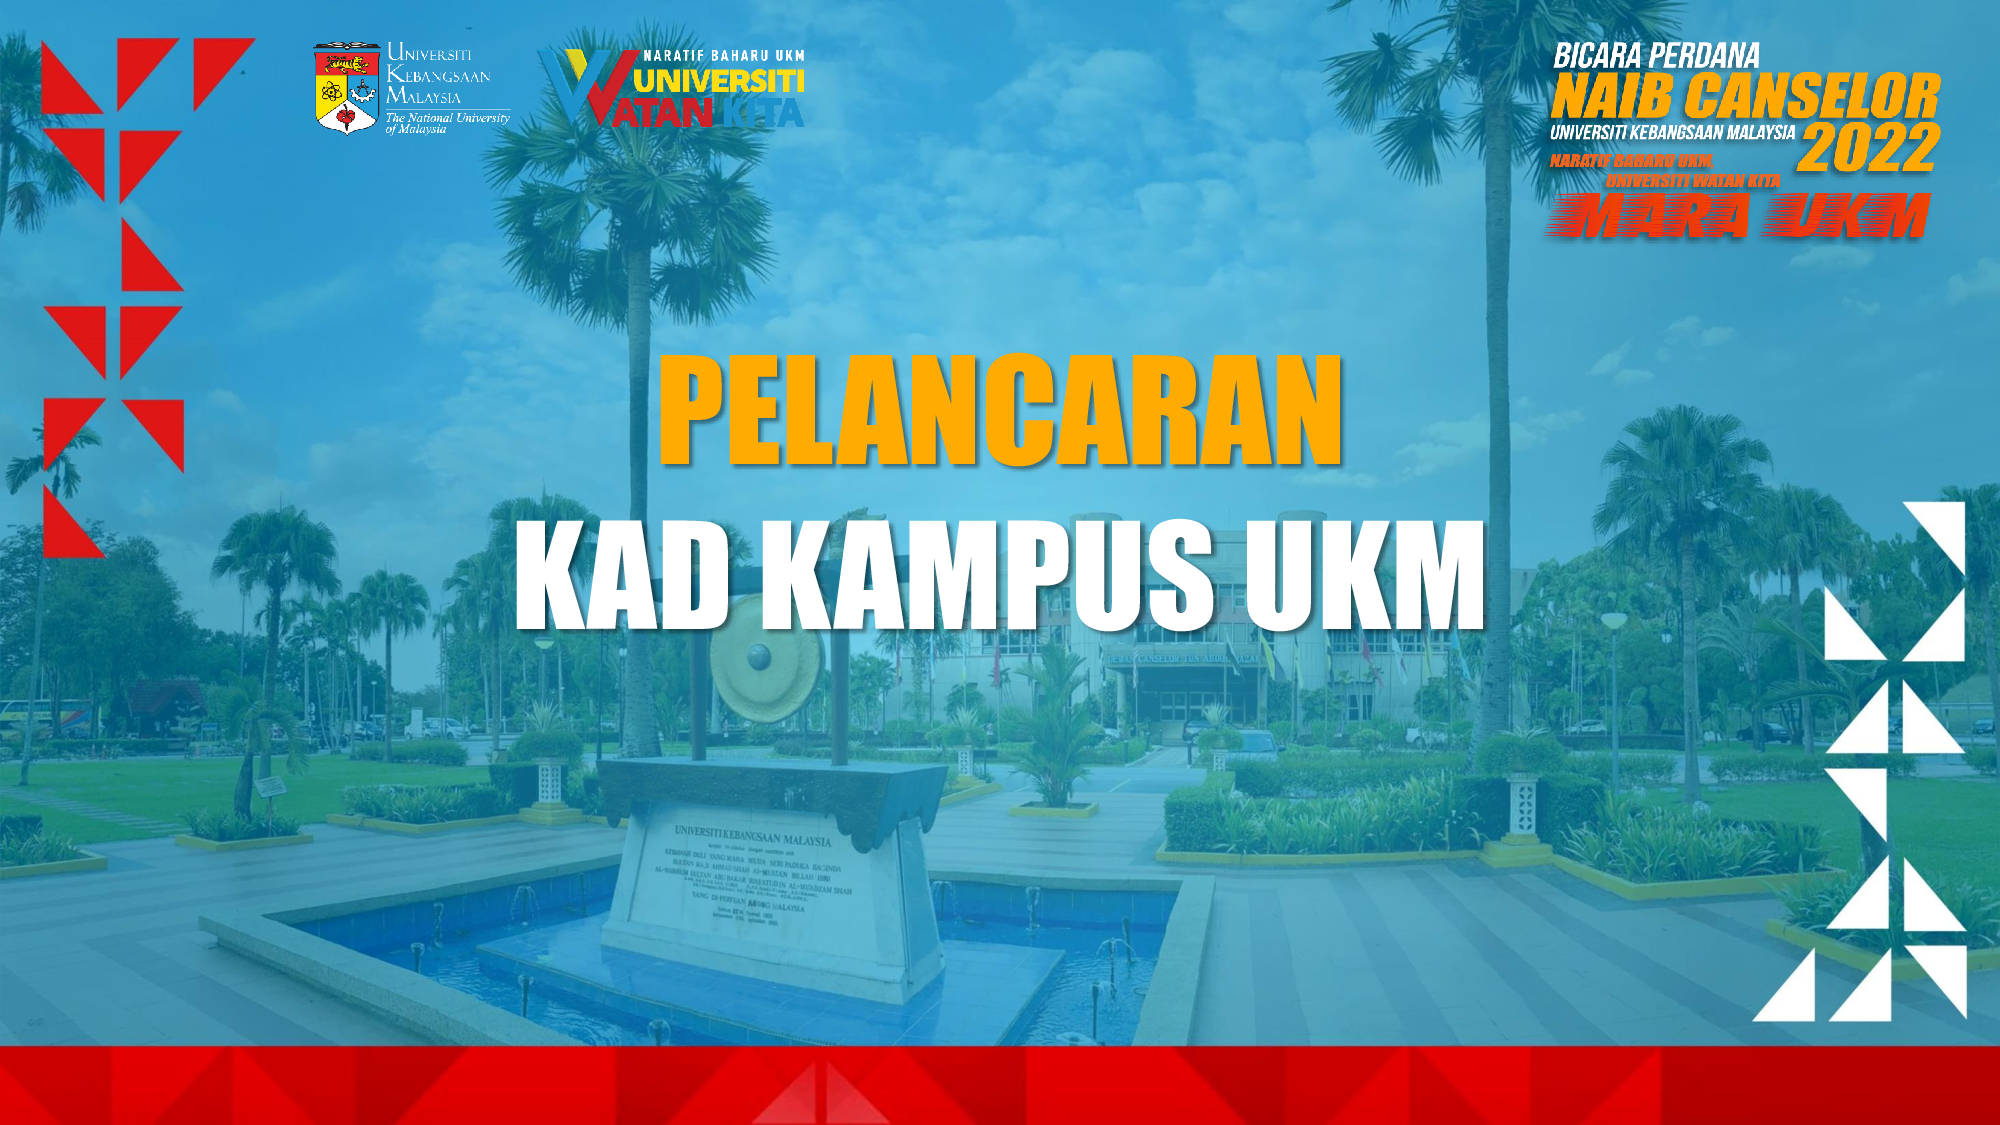 You are currently viewing Pelancaran Kad Kampus Baharu UKM